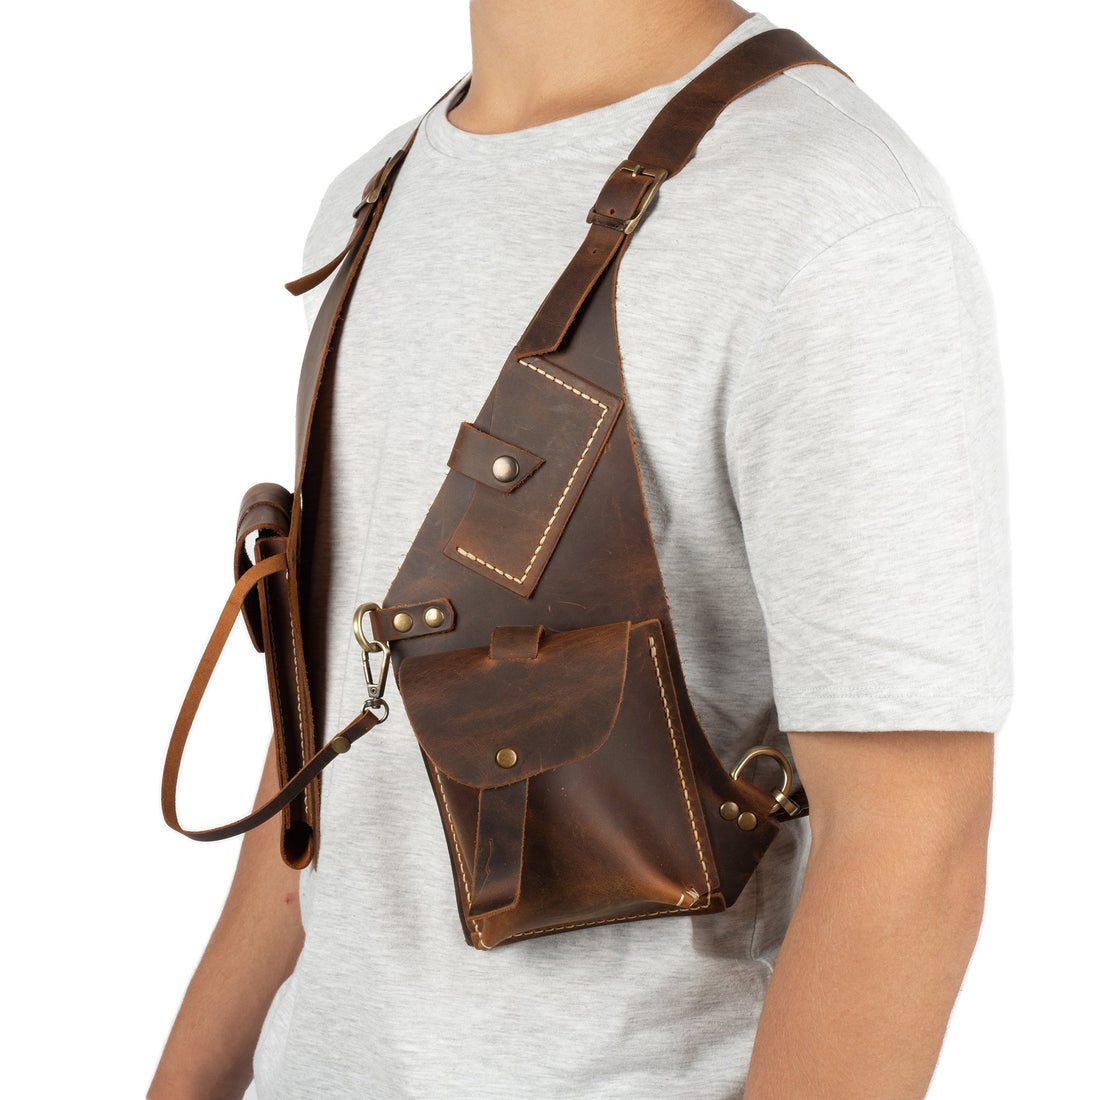 Regulus Brown Shoulder Leather Holster With Pocket - Zengoda Shop online from Artisan Brands